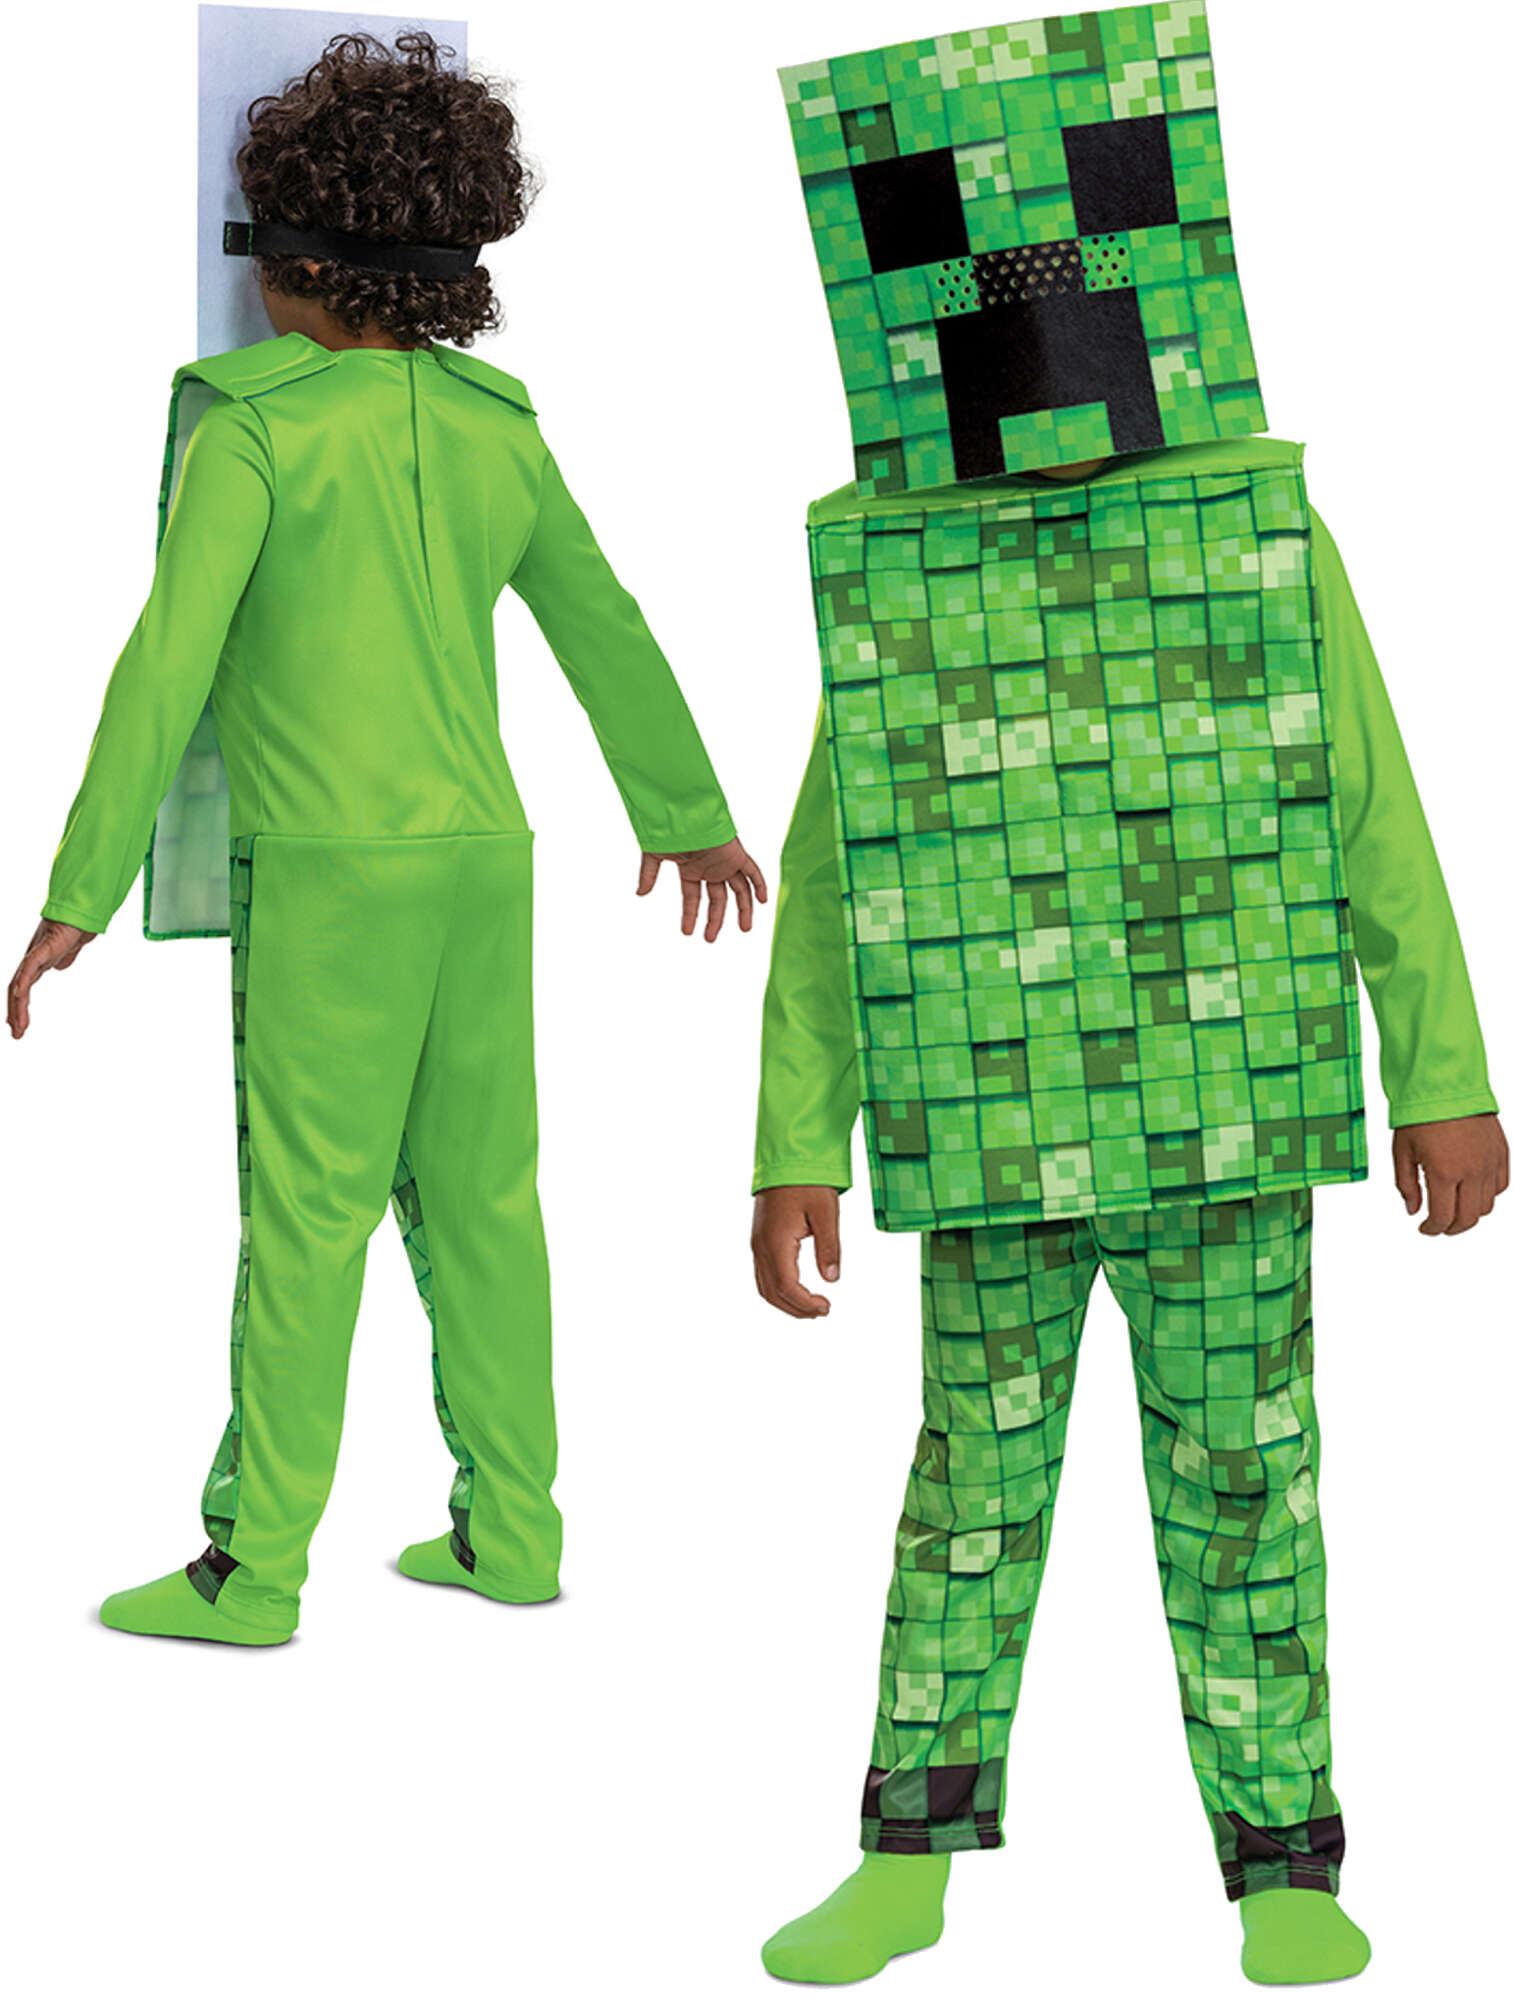 Minecraft strj karnawaowy dla chopca Creeper kostium przebranie 125-135 cm (7-8 lat)